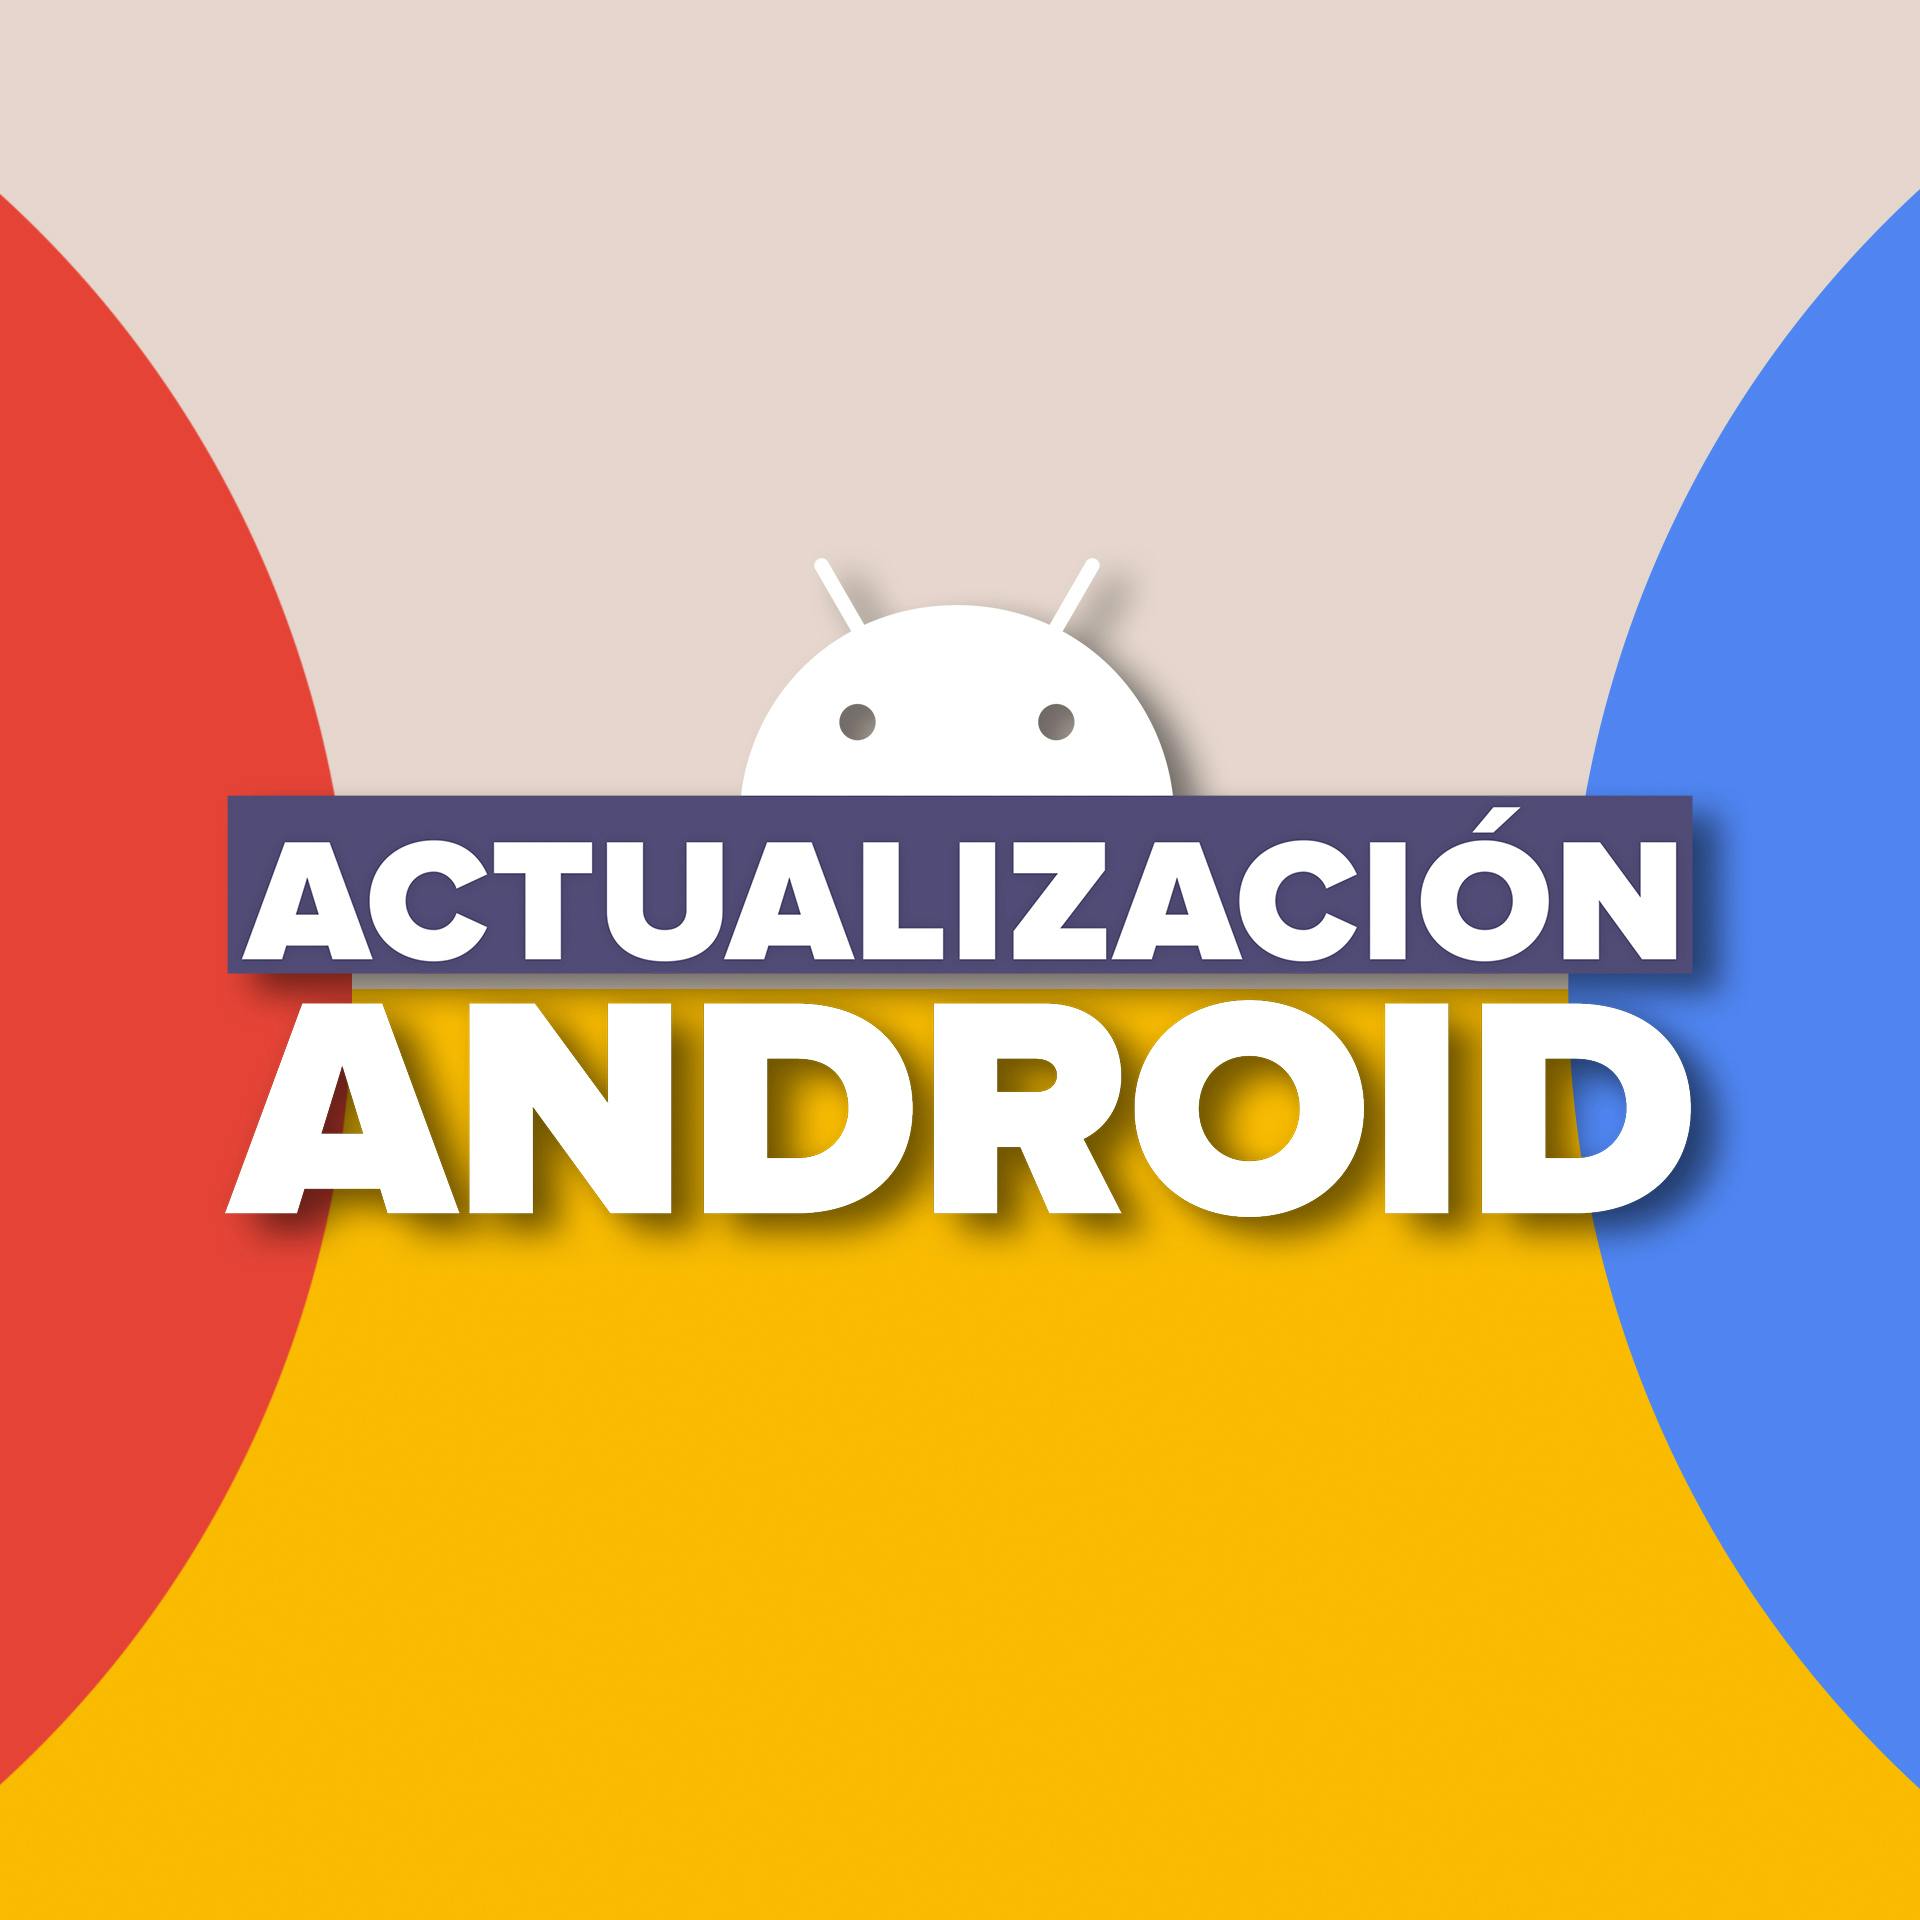 Actualización Android con Juan Garzon